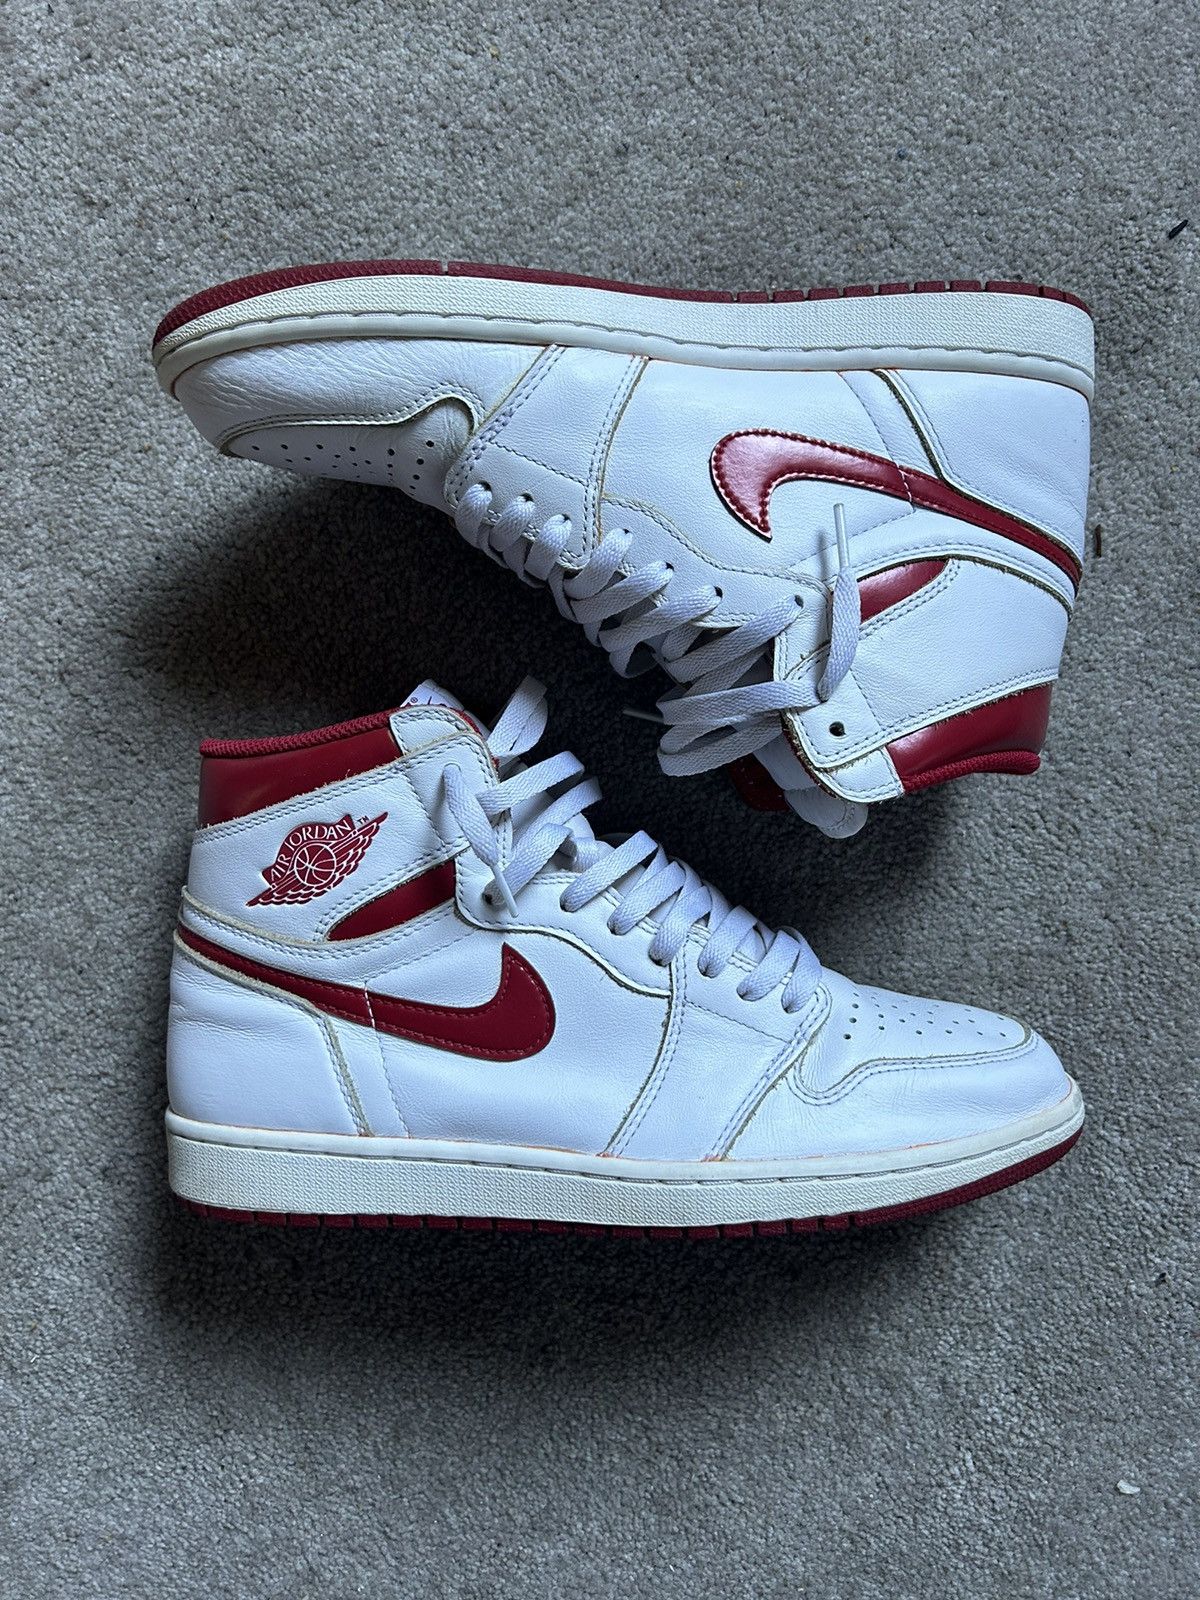 Pre-owned Jordan Nike Jordan 1 Retro High Og Metallic Red 2017 Shoes In White